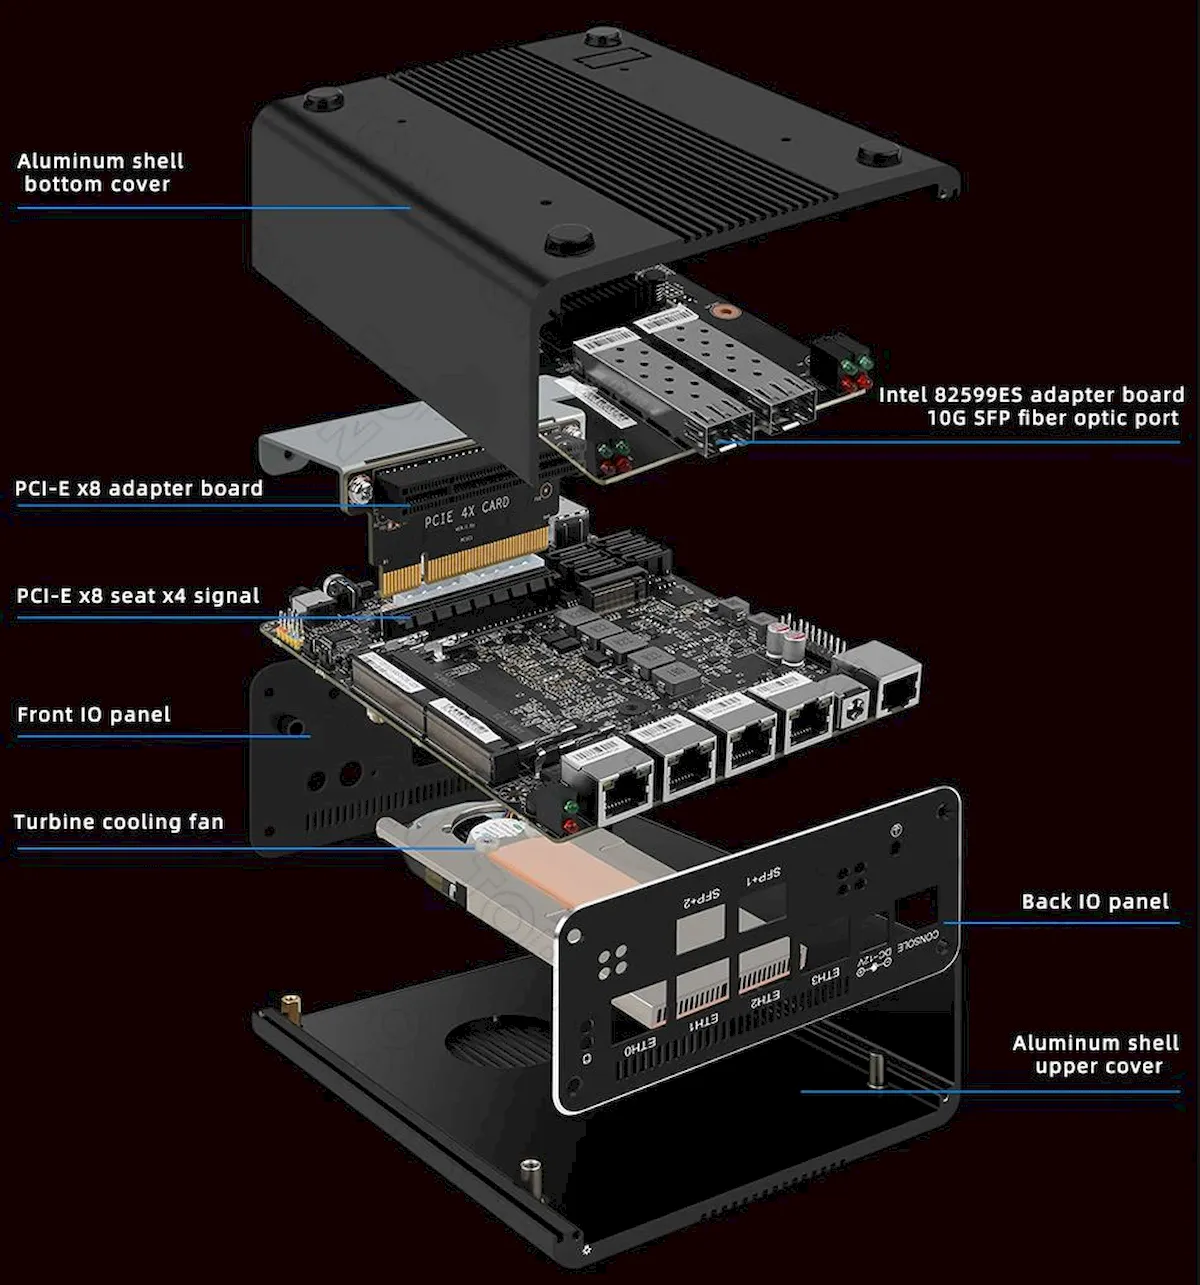 Topton soft, um mini PC com até 8 portas Ethernet high-speed